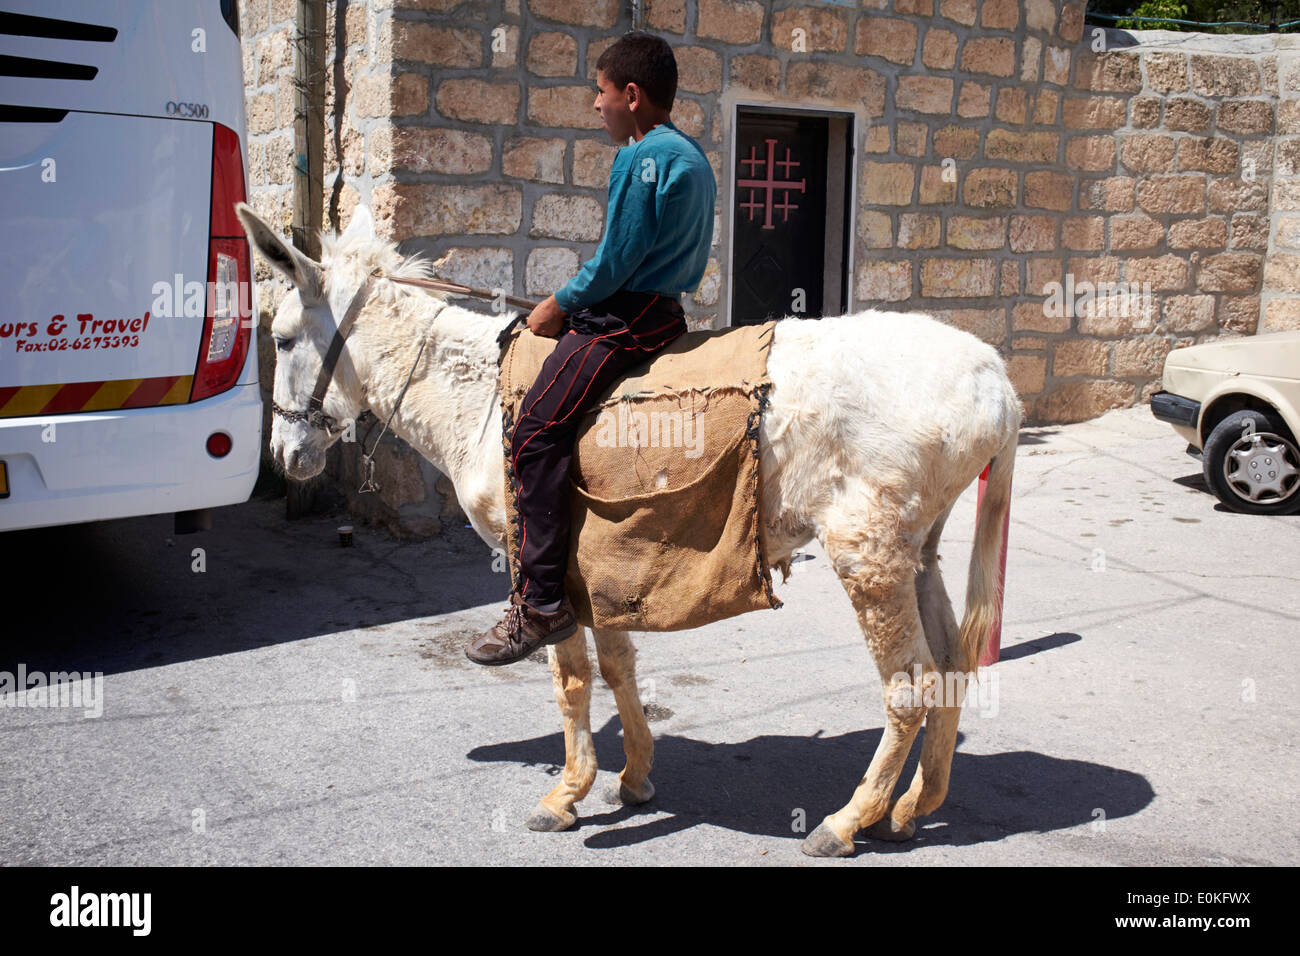 Boy on Donkey outside of The Church of the Shepherds, Bethlehem, West Bank Stock Photo